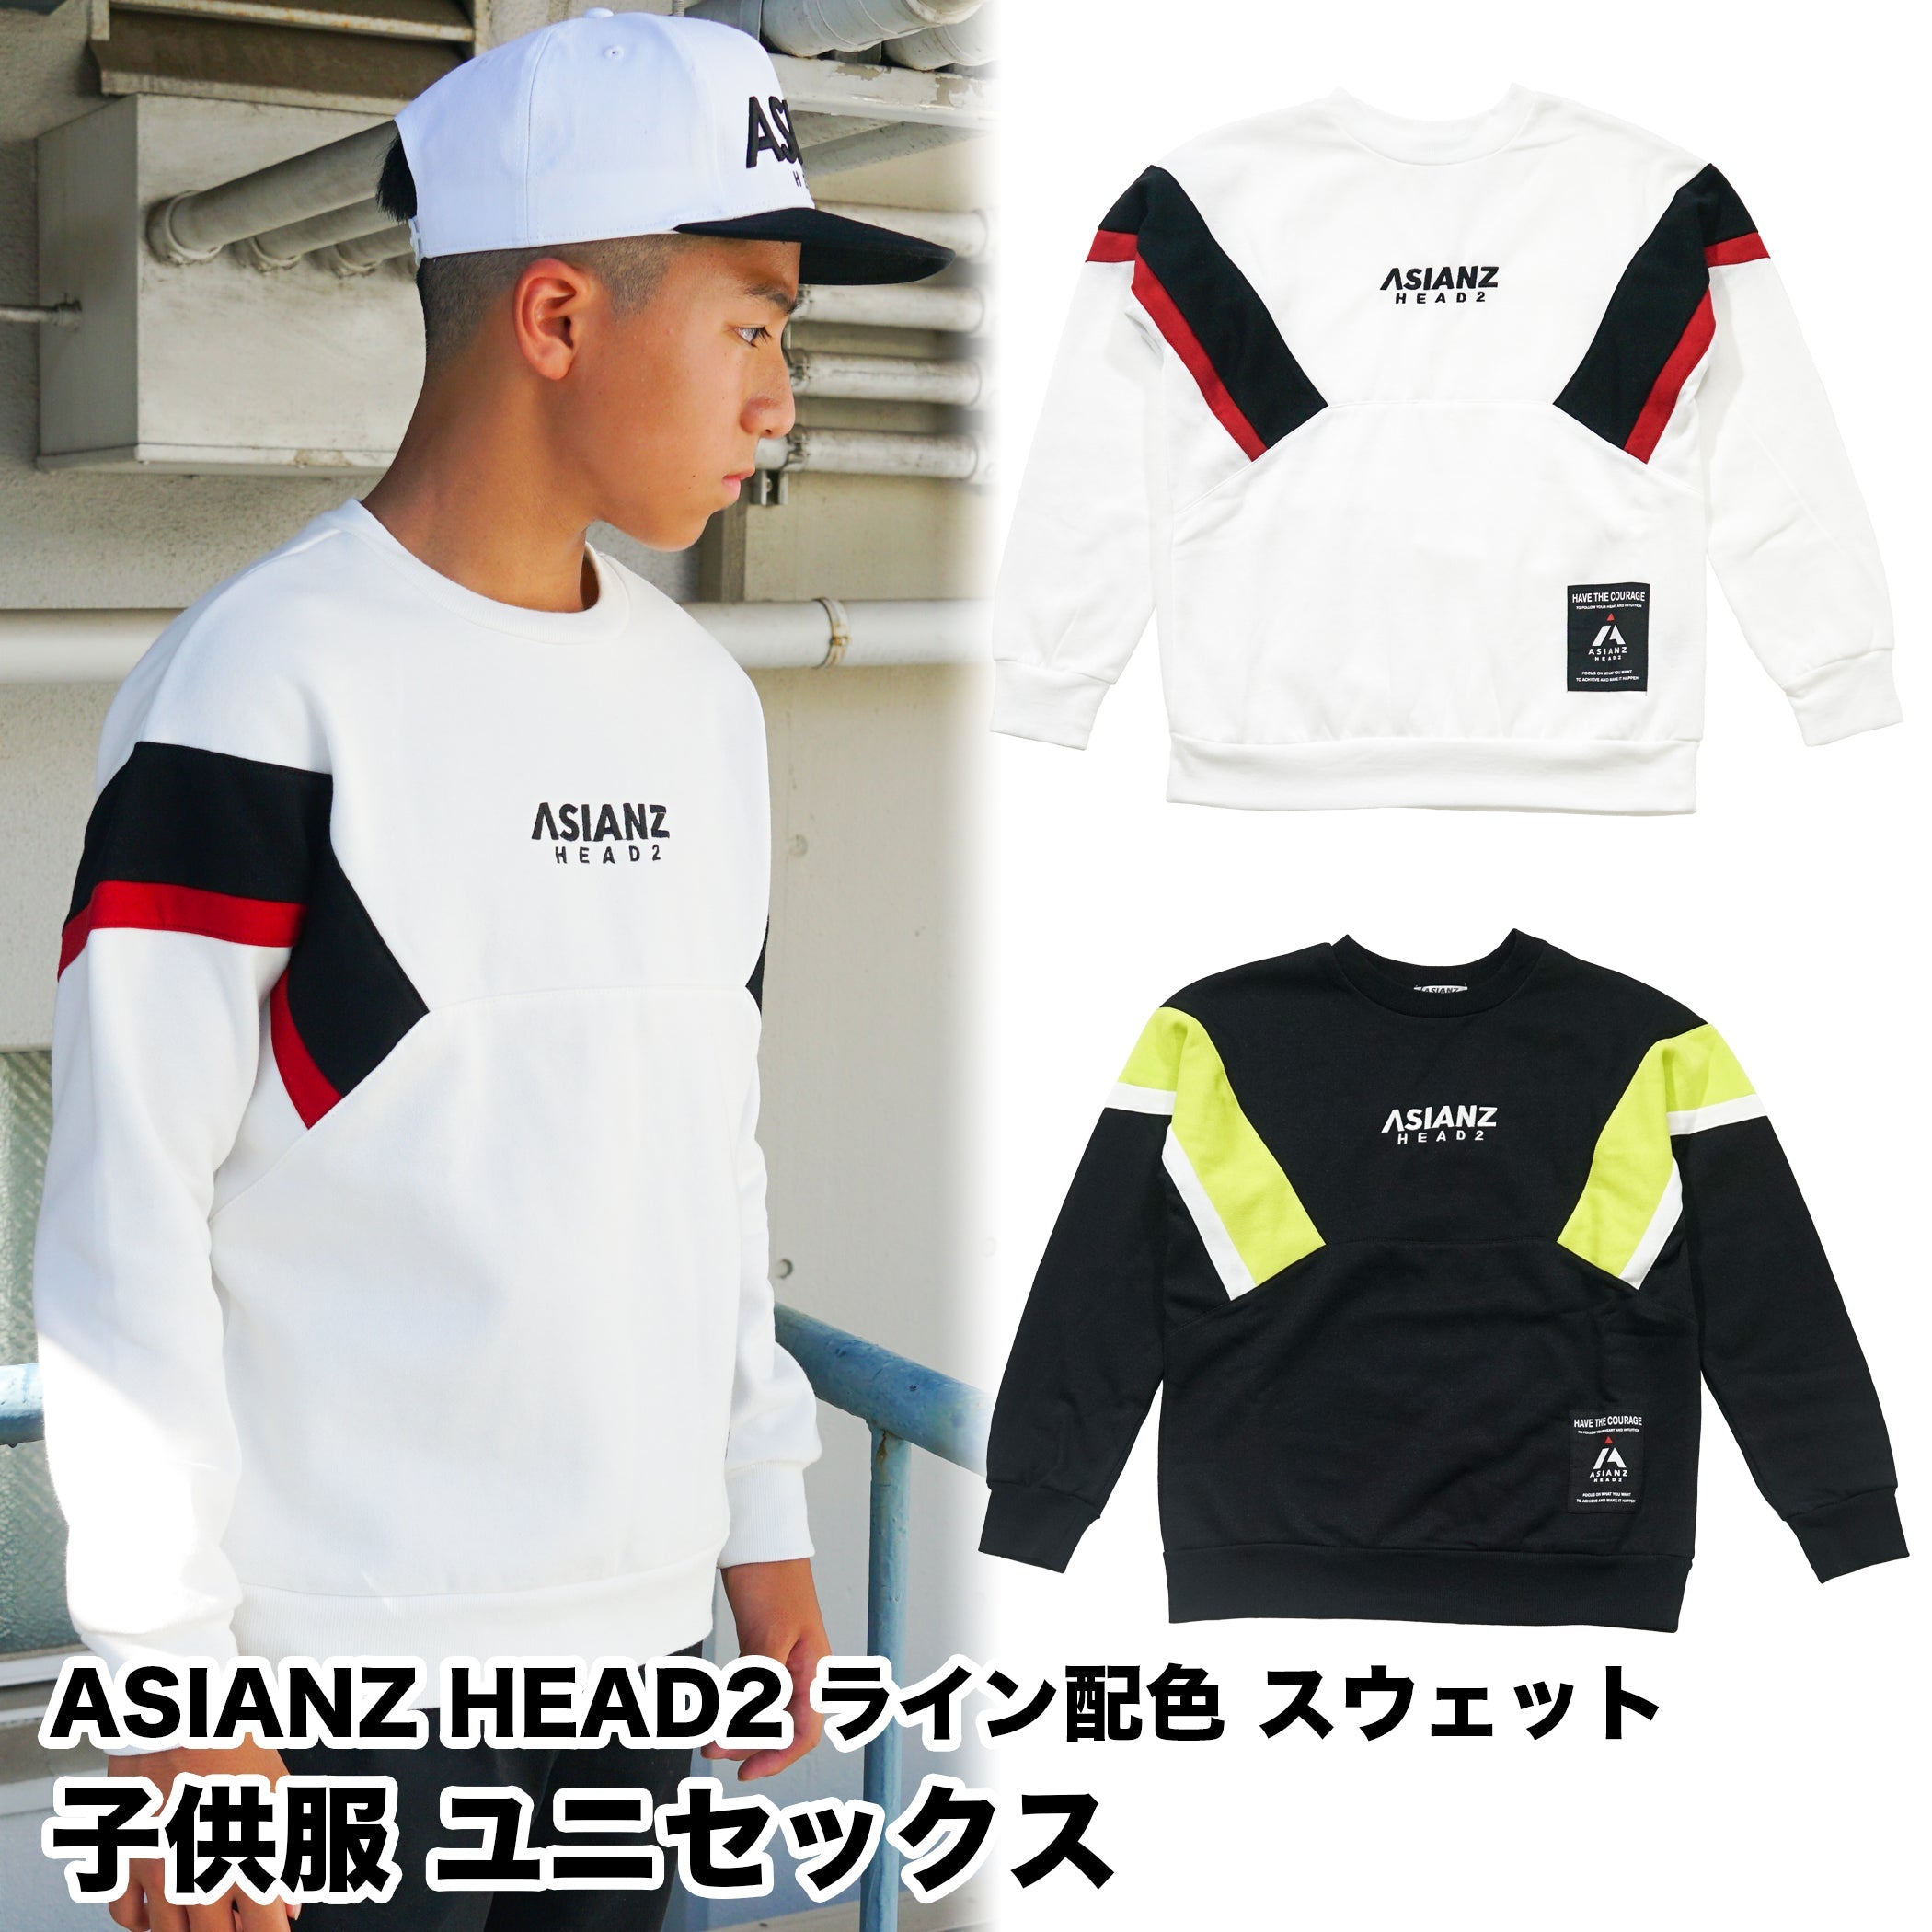 (セール商品) ASIANZ HEAD2 ライン配色スウェット キッズウェアー